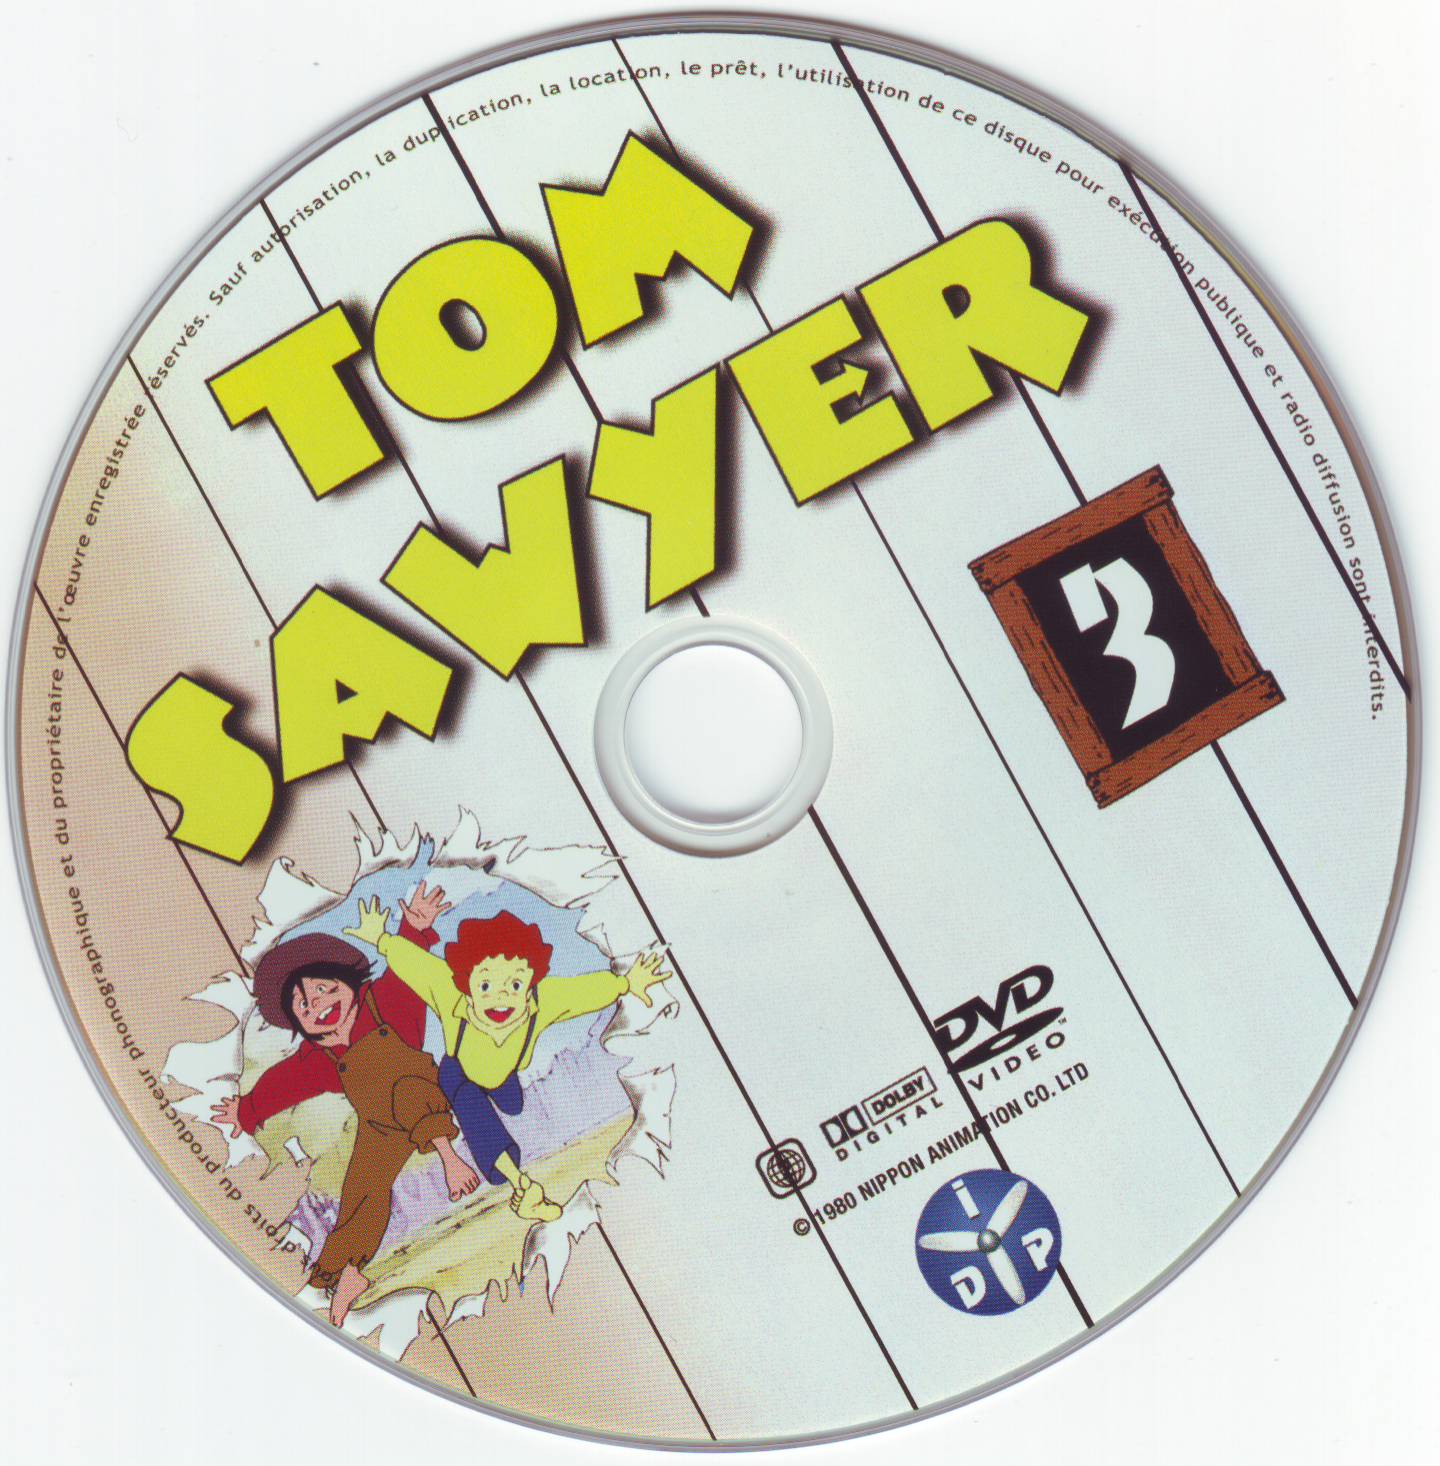 Tom Sawyer DVD 3